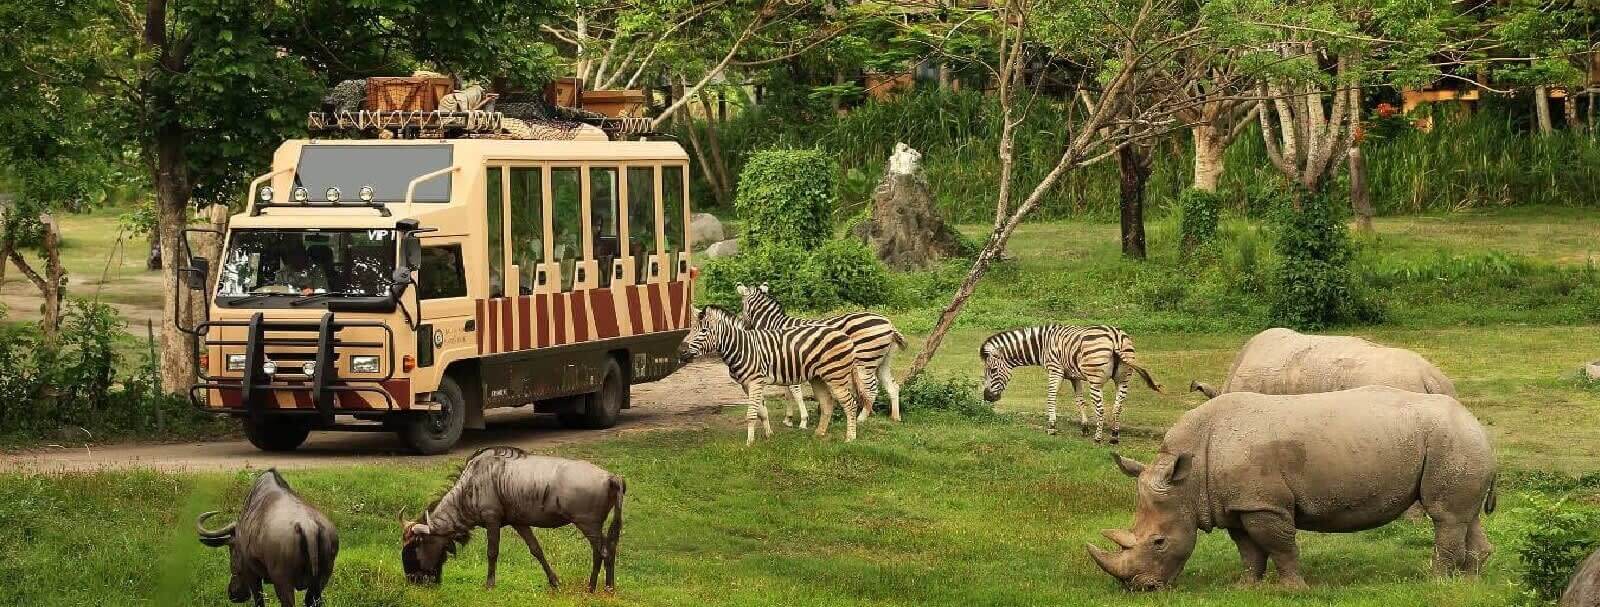 Bali safari